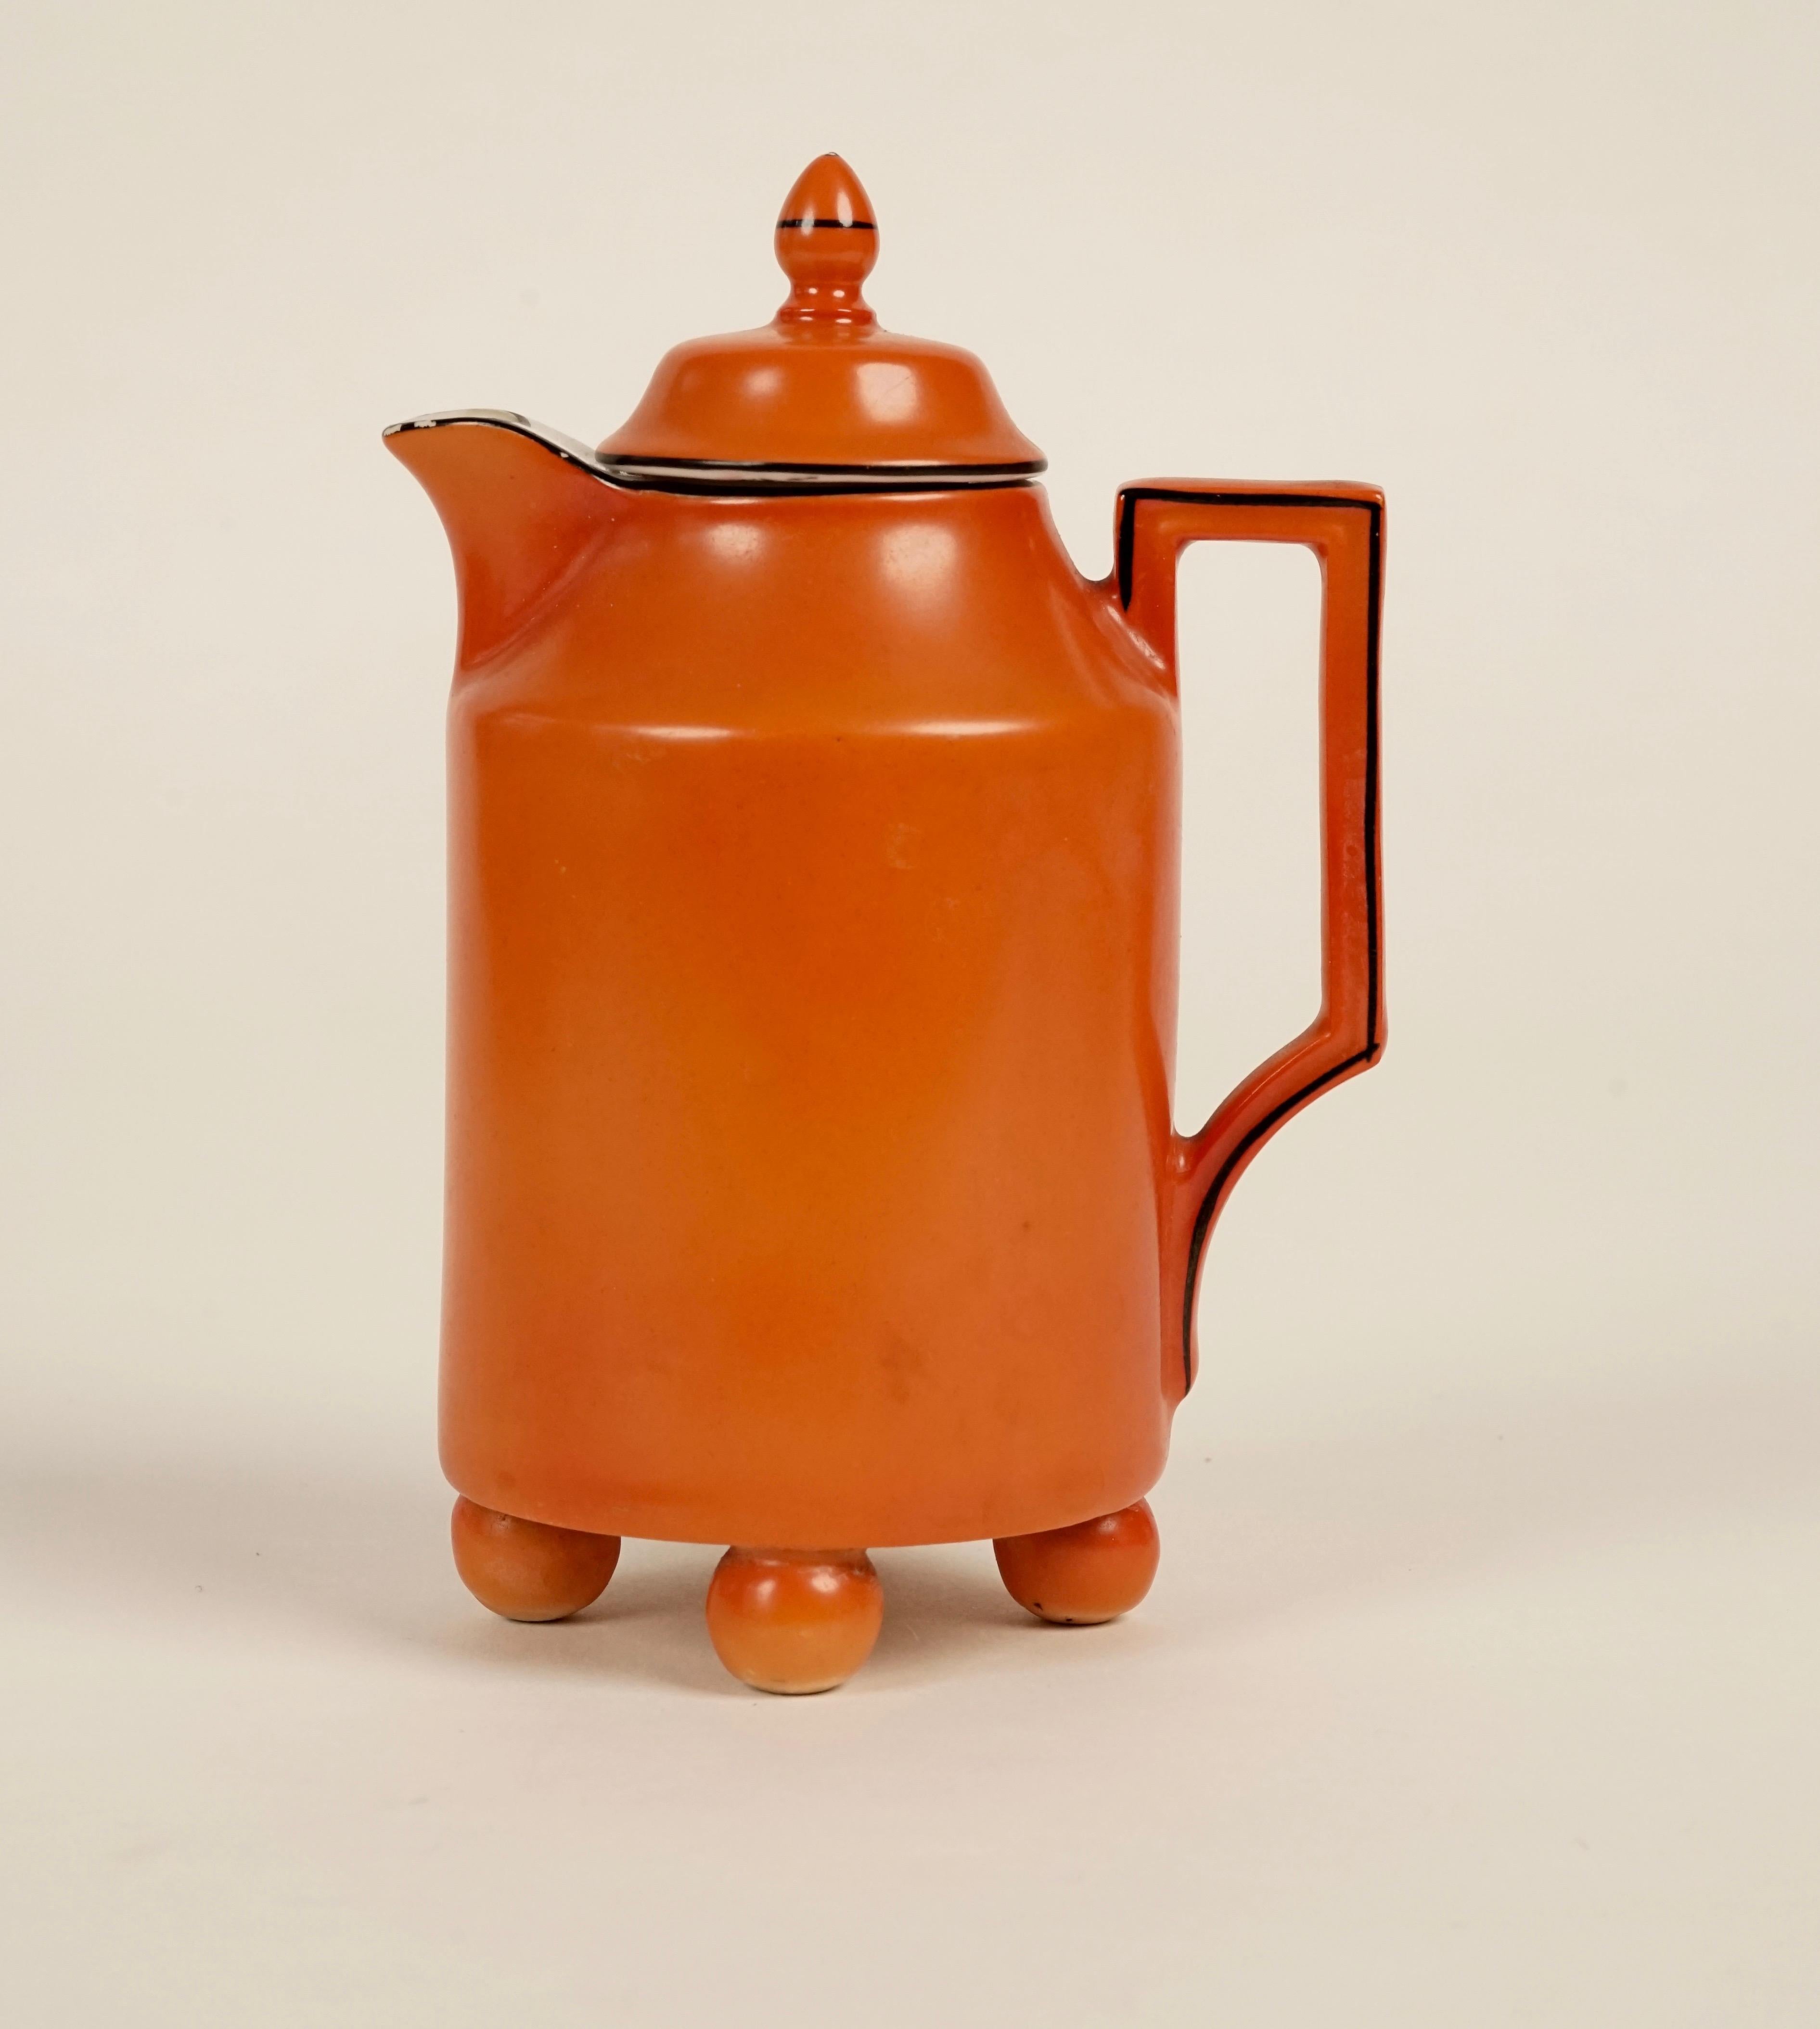 Service Mokka des années 1930, produit par la manufacture de porcelaine Victoria Carlsbad.
Ce set de couleur corail avec lin noir imprimé à la main comprend : 1 cafetière, 3 tasses avec 3 soucoupes, une petite boule pour le sucre et un